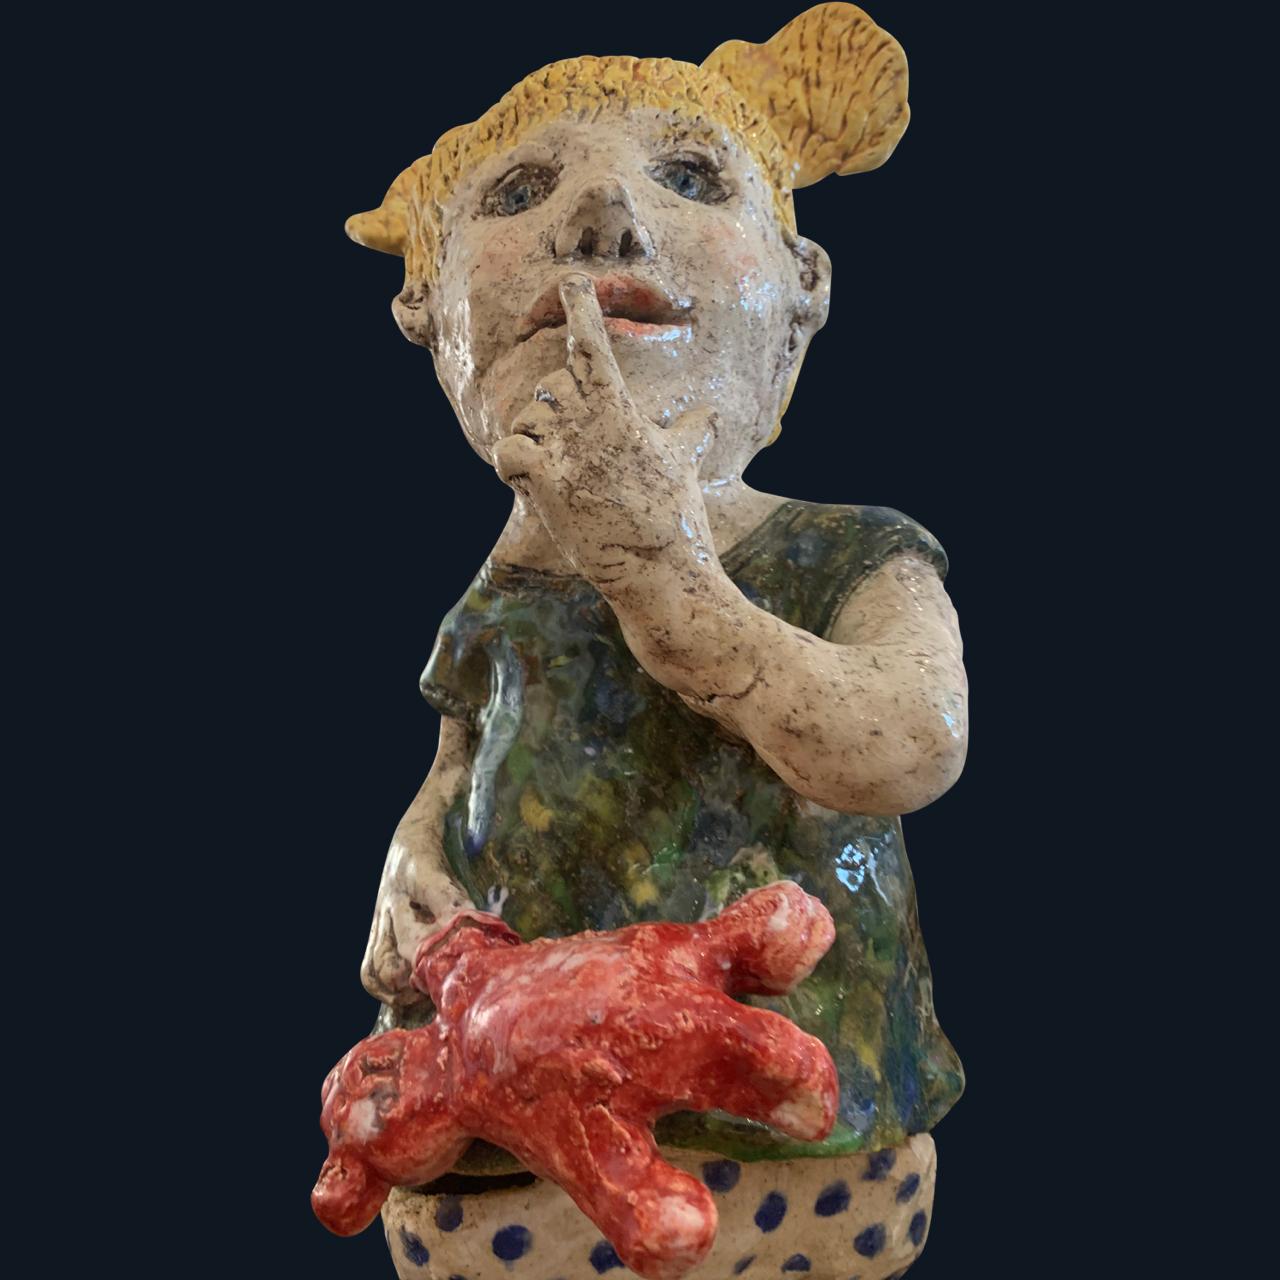 Le bambin et le nounours  Sculpture d'ours en céramique - Figuratif - 1 de 1 par Adi - Noir Figurative Sculpture par Adi Rom